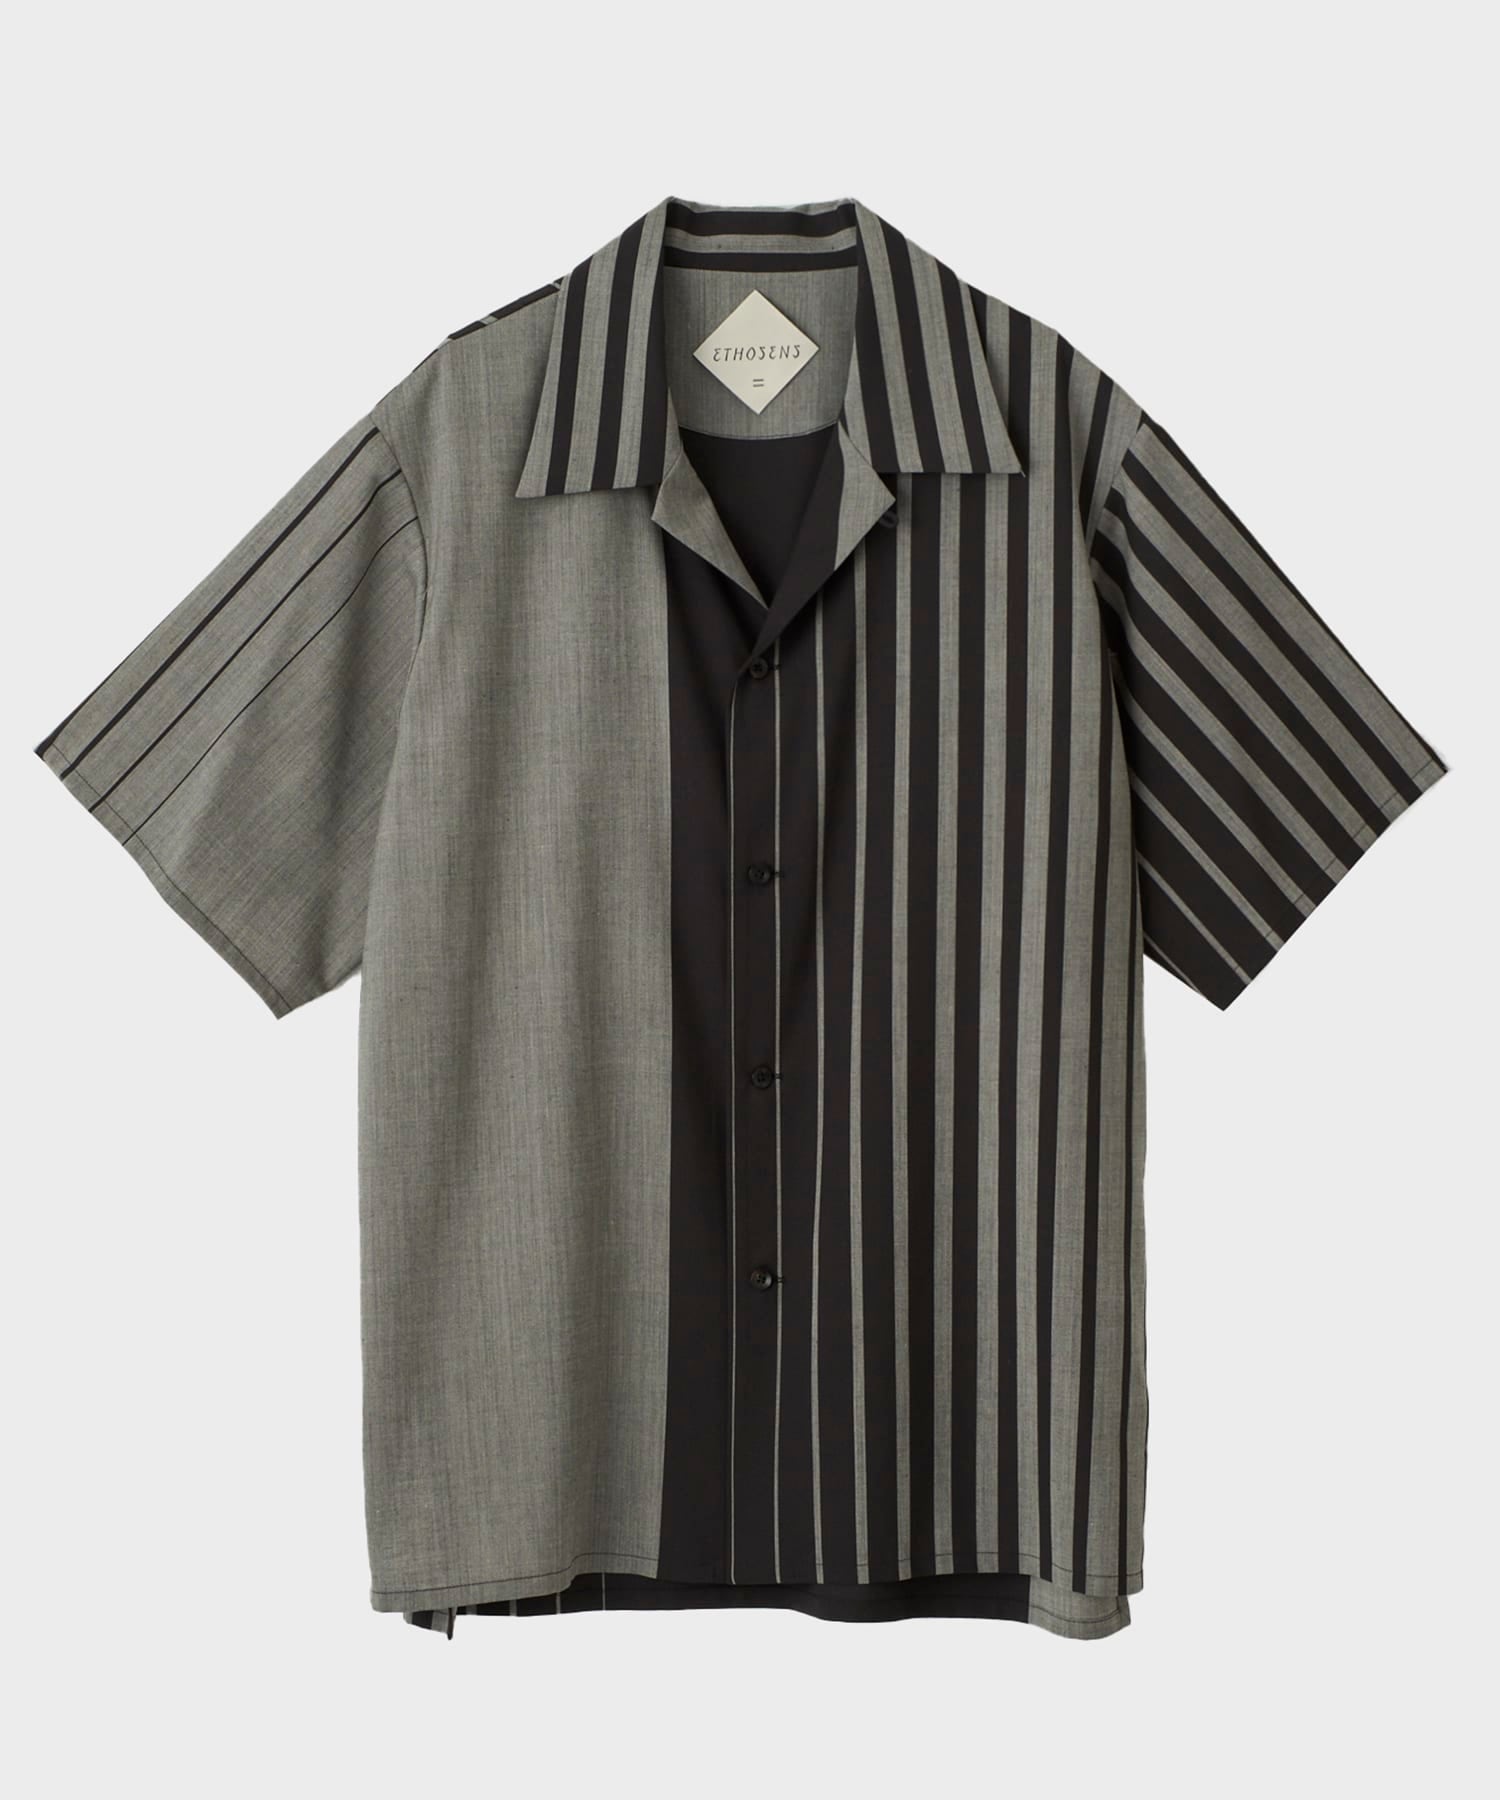 Irregular stripe SS shirt